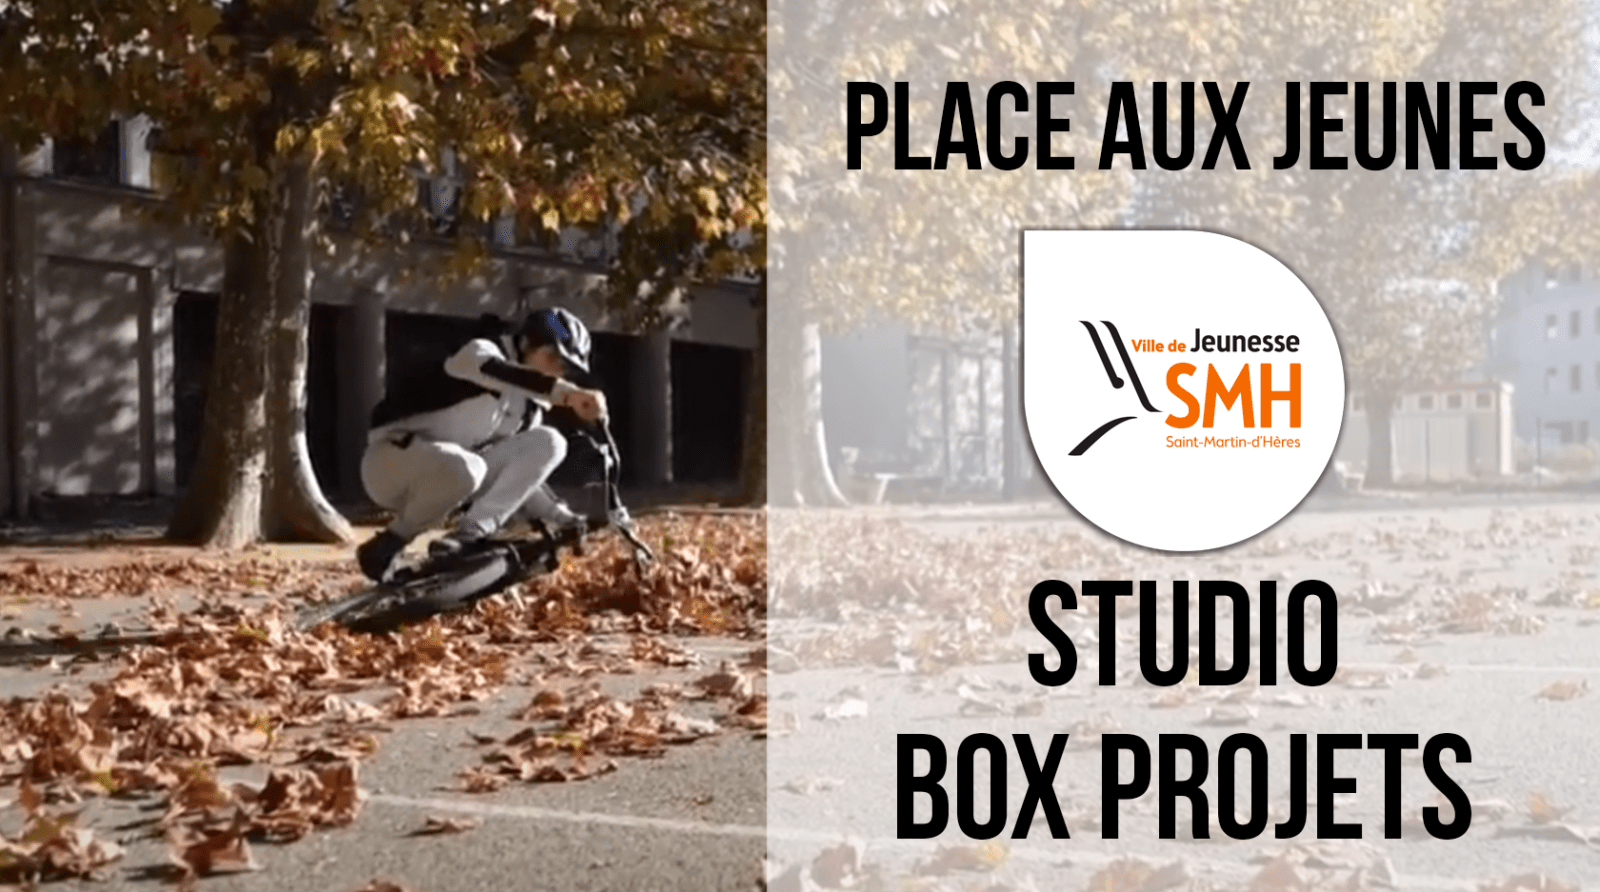 SMH Place aux jeunes Studio Box Projets Place aux jeunes Studio Box Projets